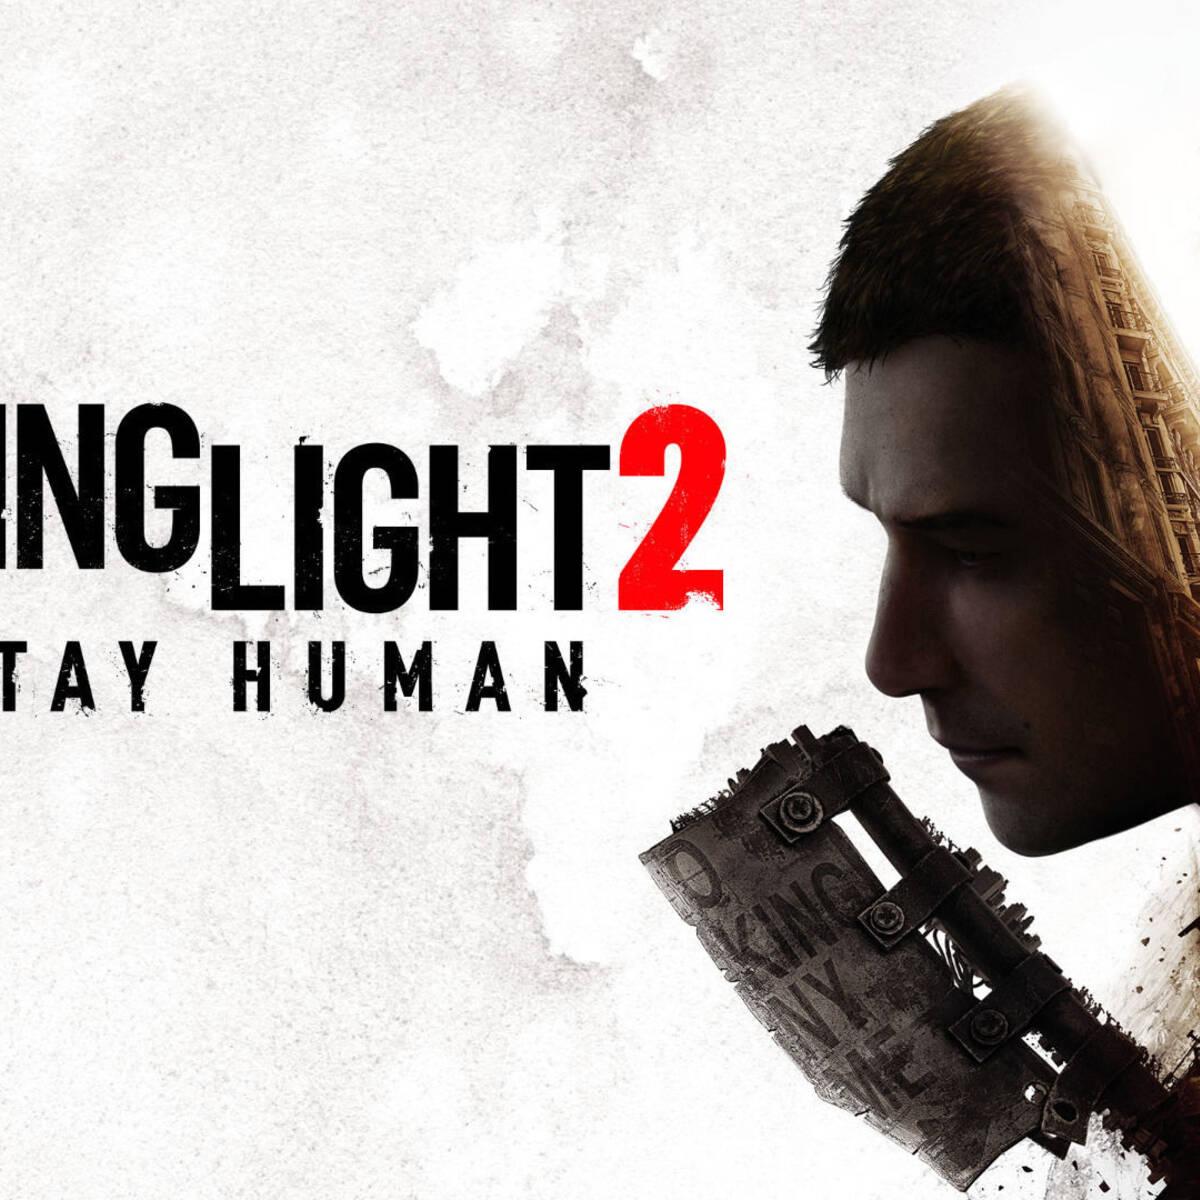 Dying Light 2 Stay Human ya disponible: requisitos, precio y ediciones, PS5, Xbox Series X, Techland, Videojuegos